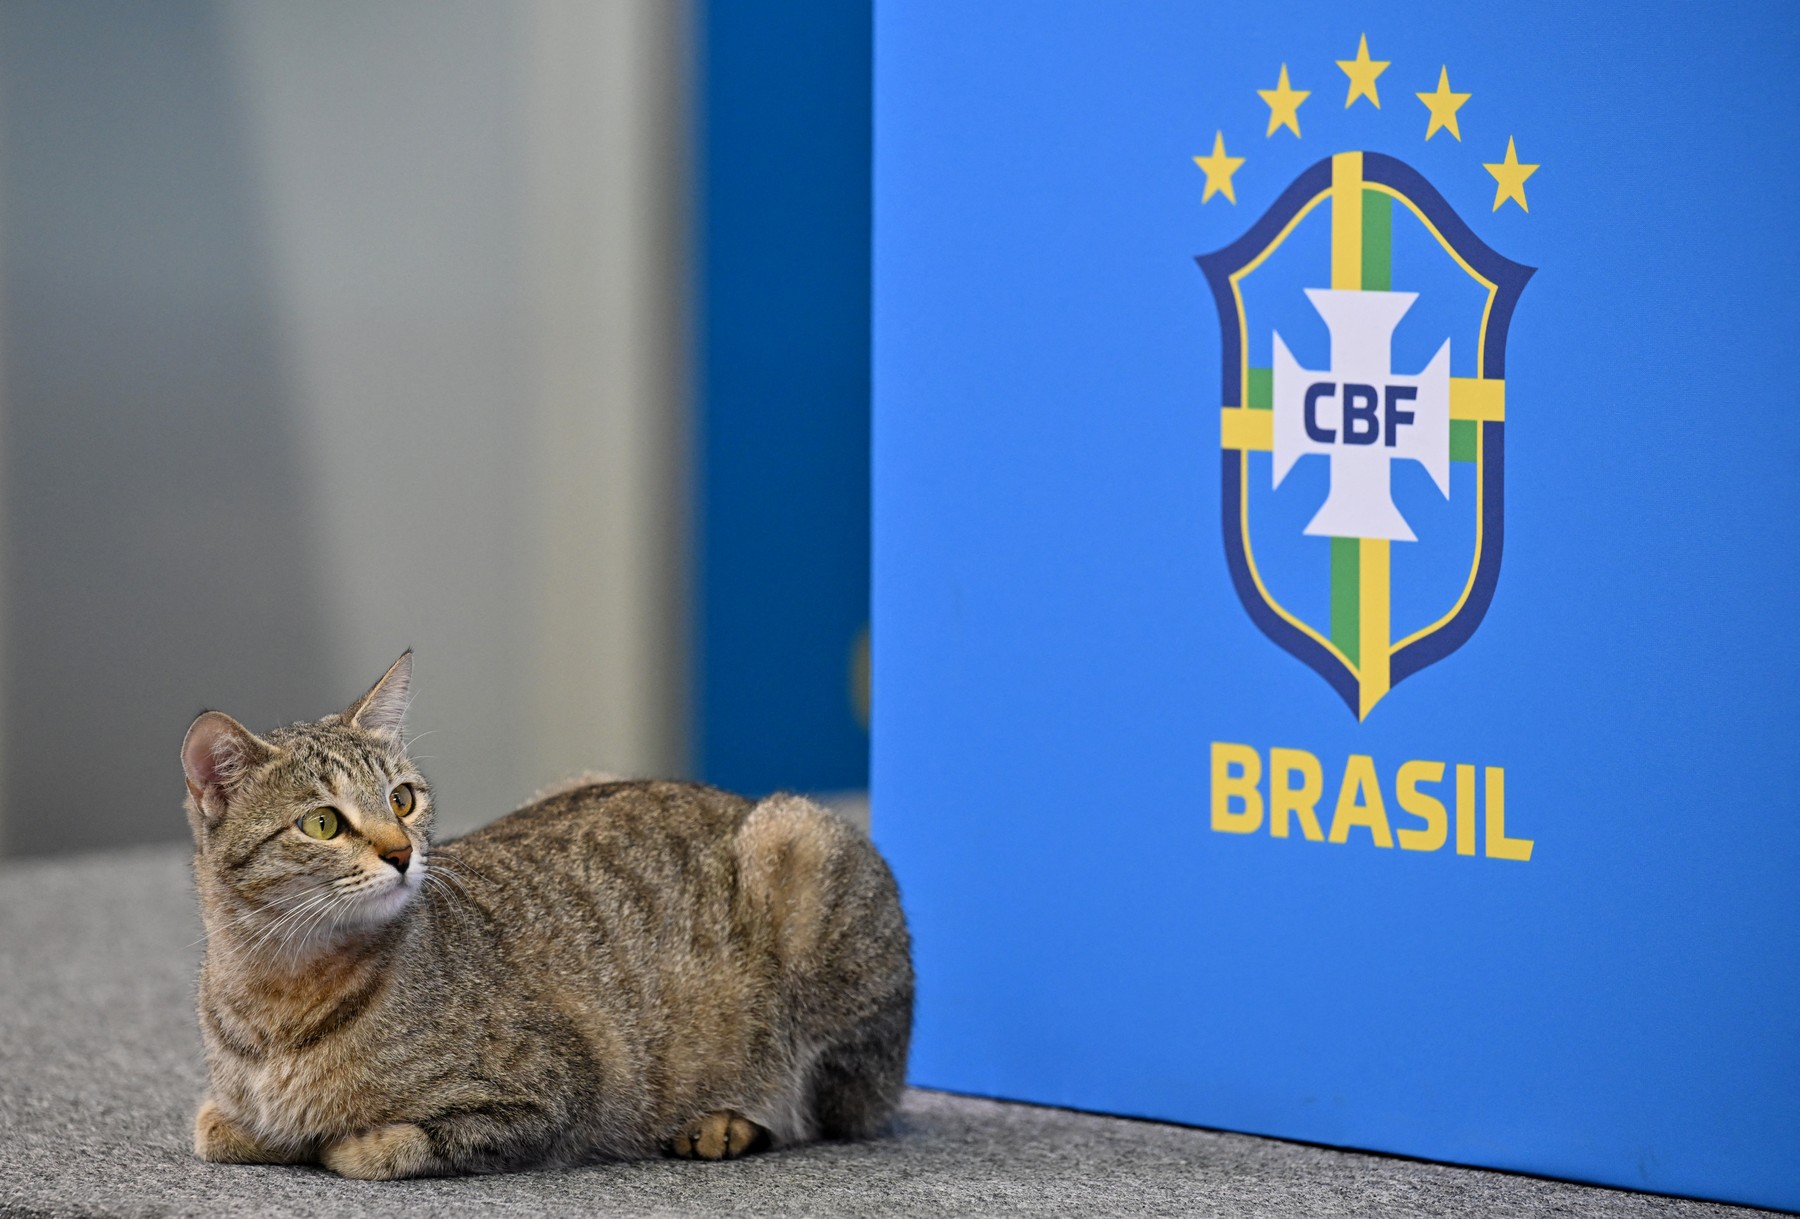 Pisica a ”eliminat” Brazilia de la Cupa Mondială: ”Karma”, ”Pisica-Brazilia 1-0”, ”Dulcea răzbunare”